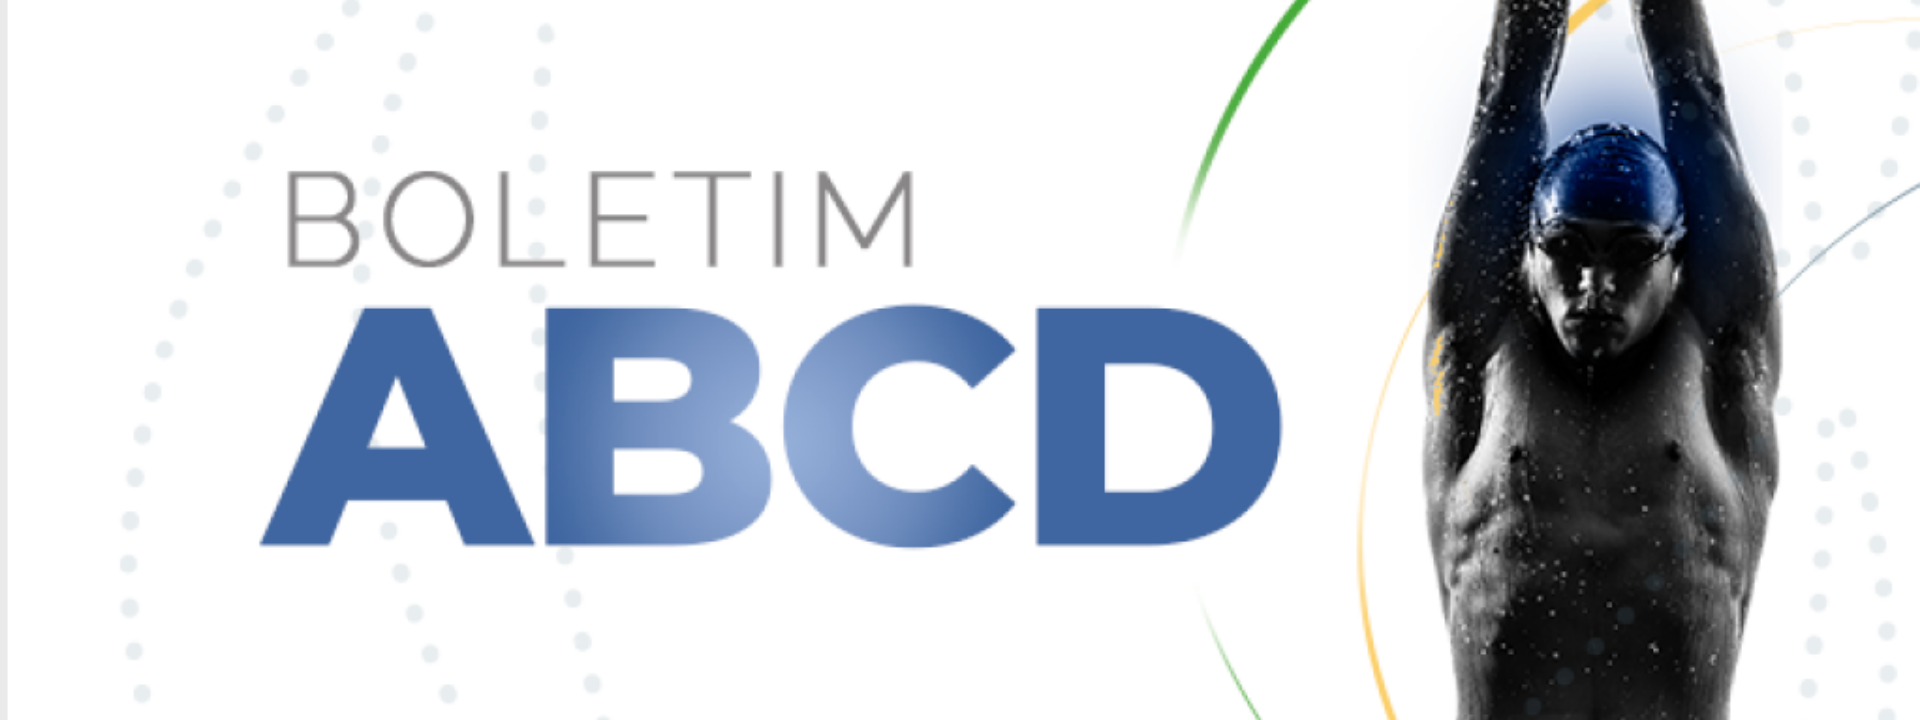 Autoridade Brasileira de Controle de Dopagem (ABCD) lança Boletim de junho com informações sobre as atividades da entidade e conteúdo educacional antidopagem